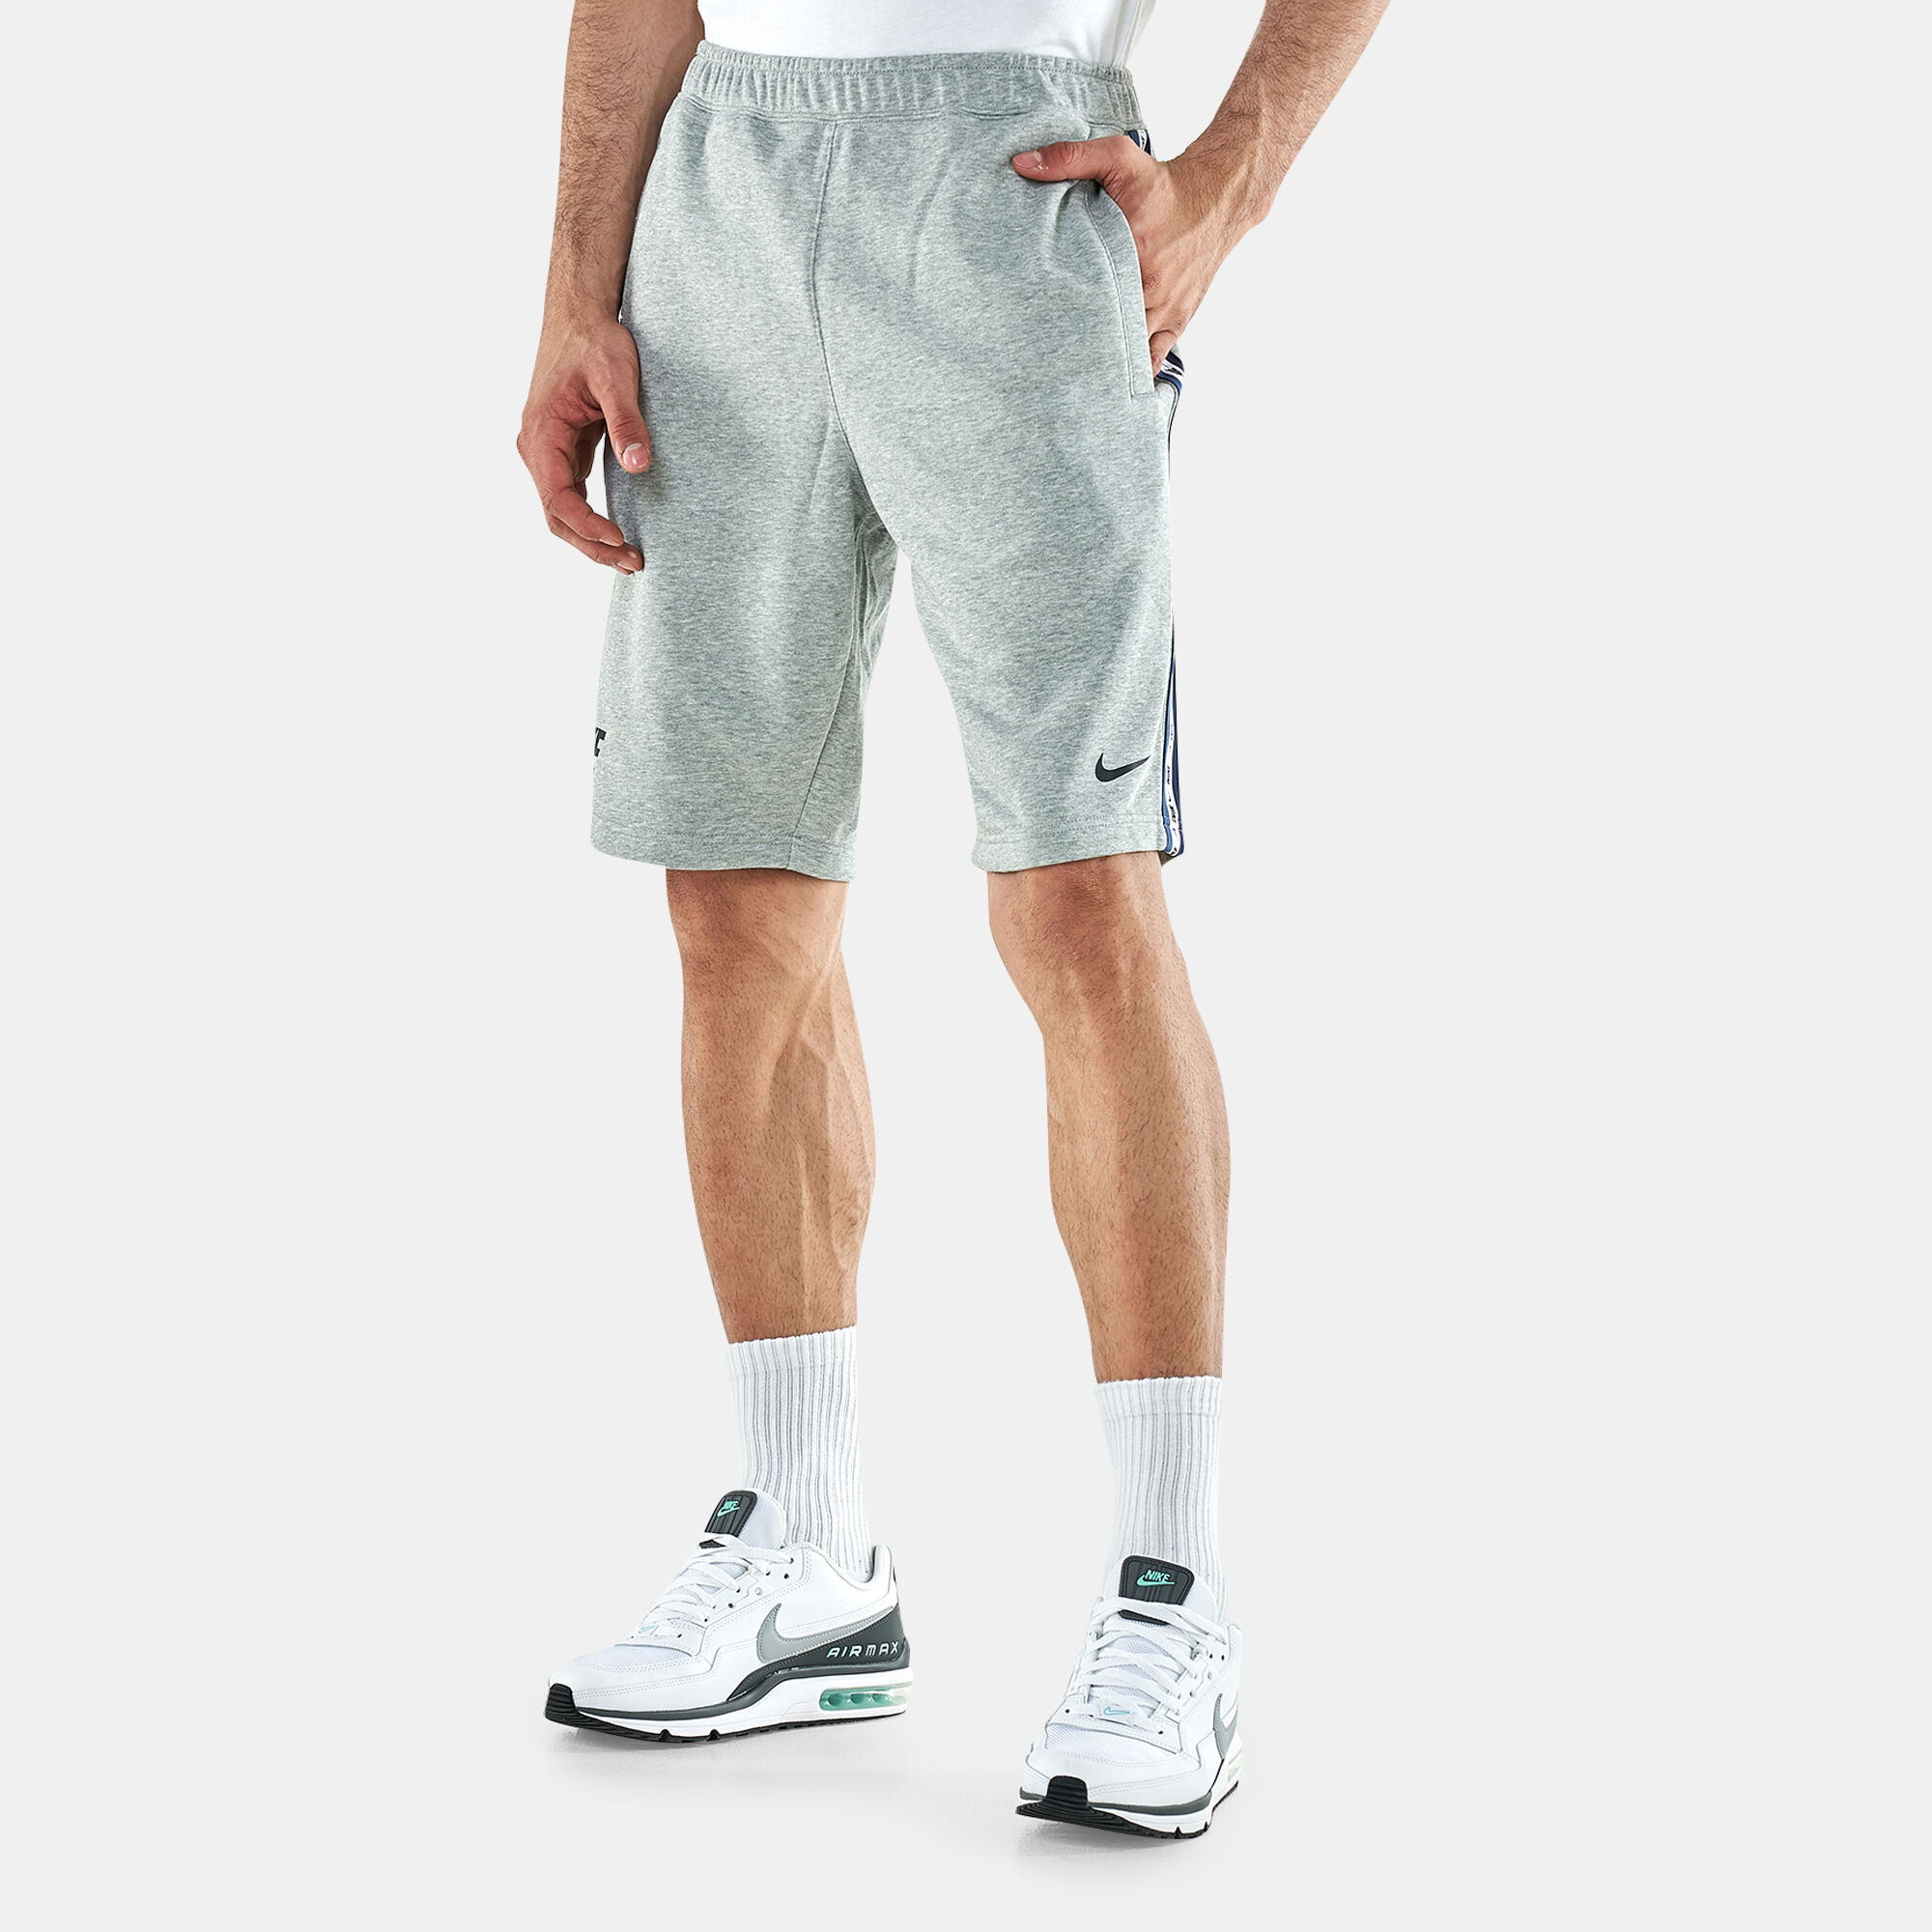 Спортивные шорты мужские Nike Nsw Repeat Ft Short DR9973-063 серые XL